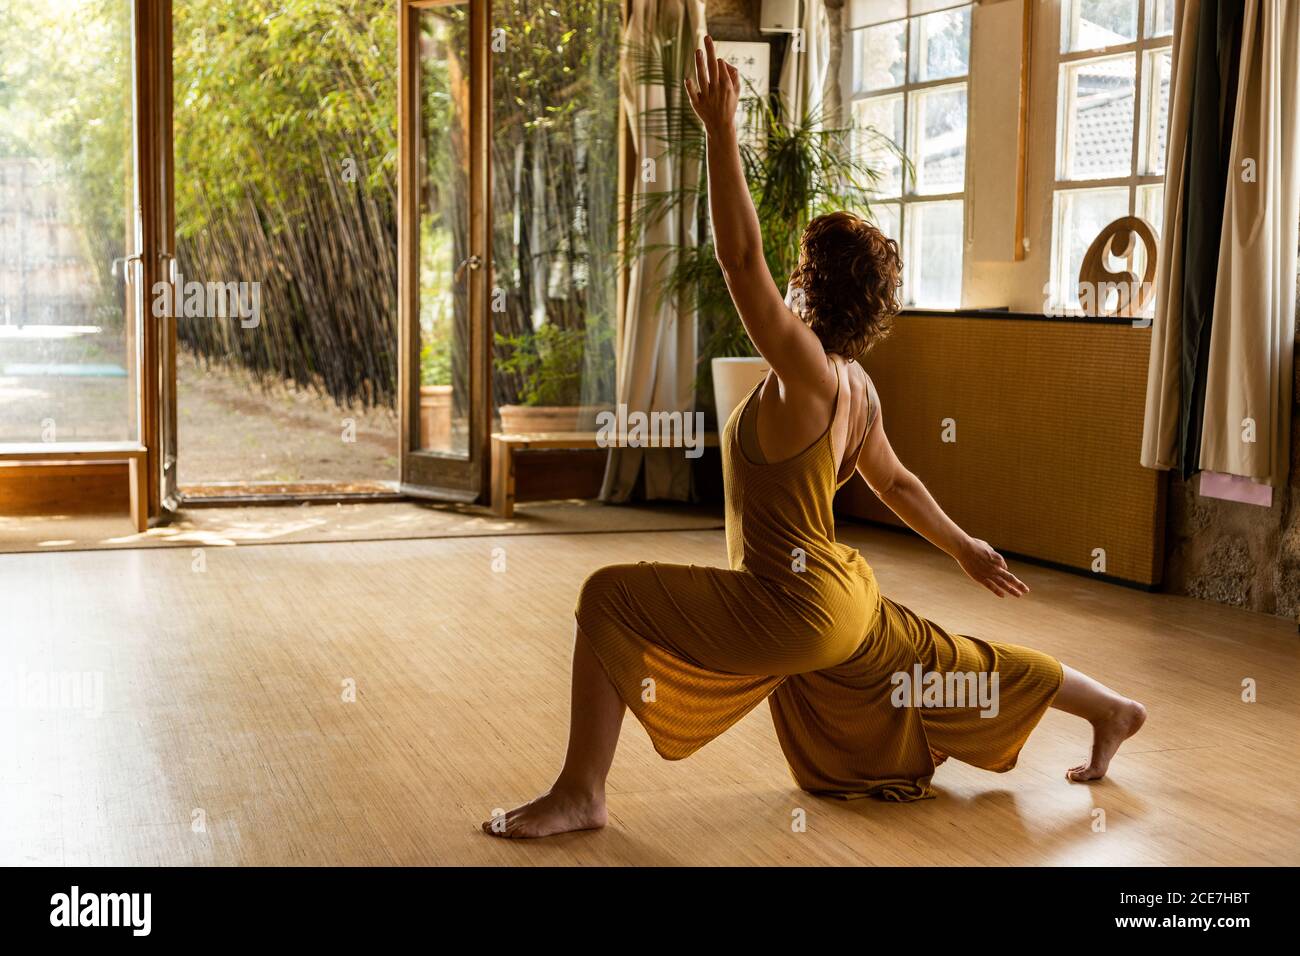 Vue latérale d'une femme pieds nus en studio Anjaneyasana et faire du yoga tout en regardant Banque D'Images